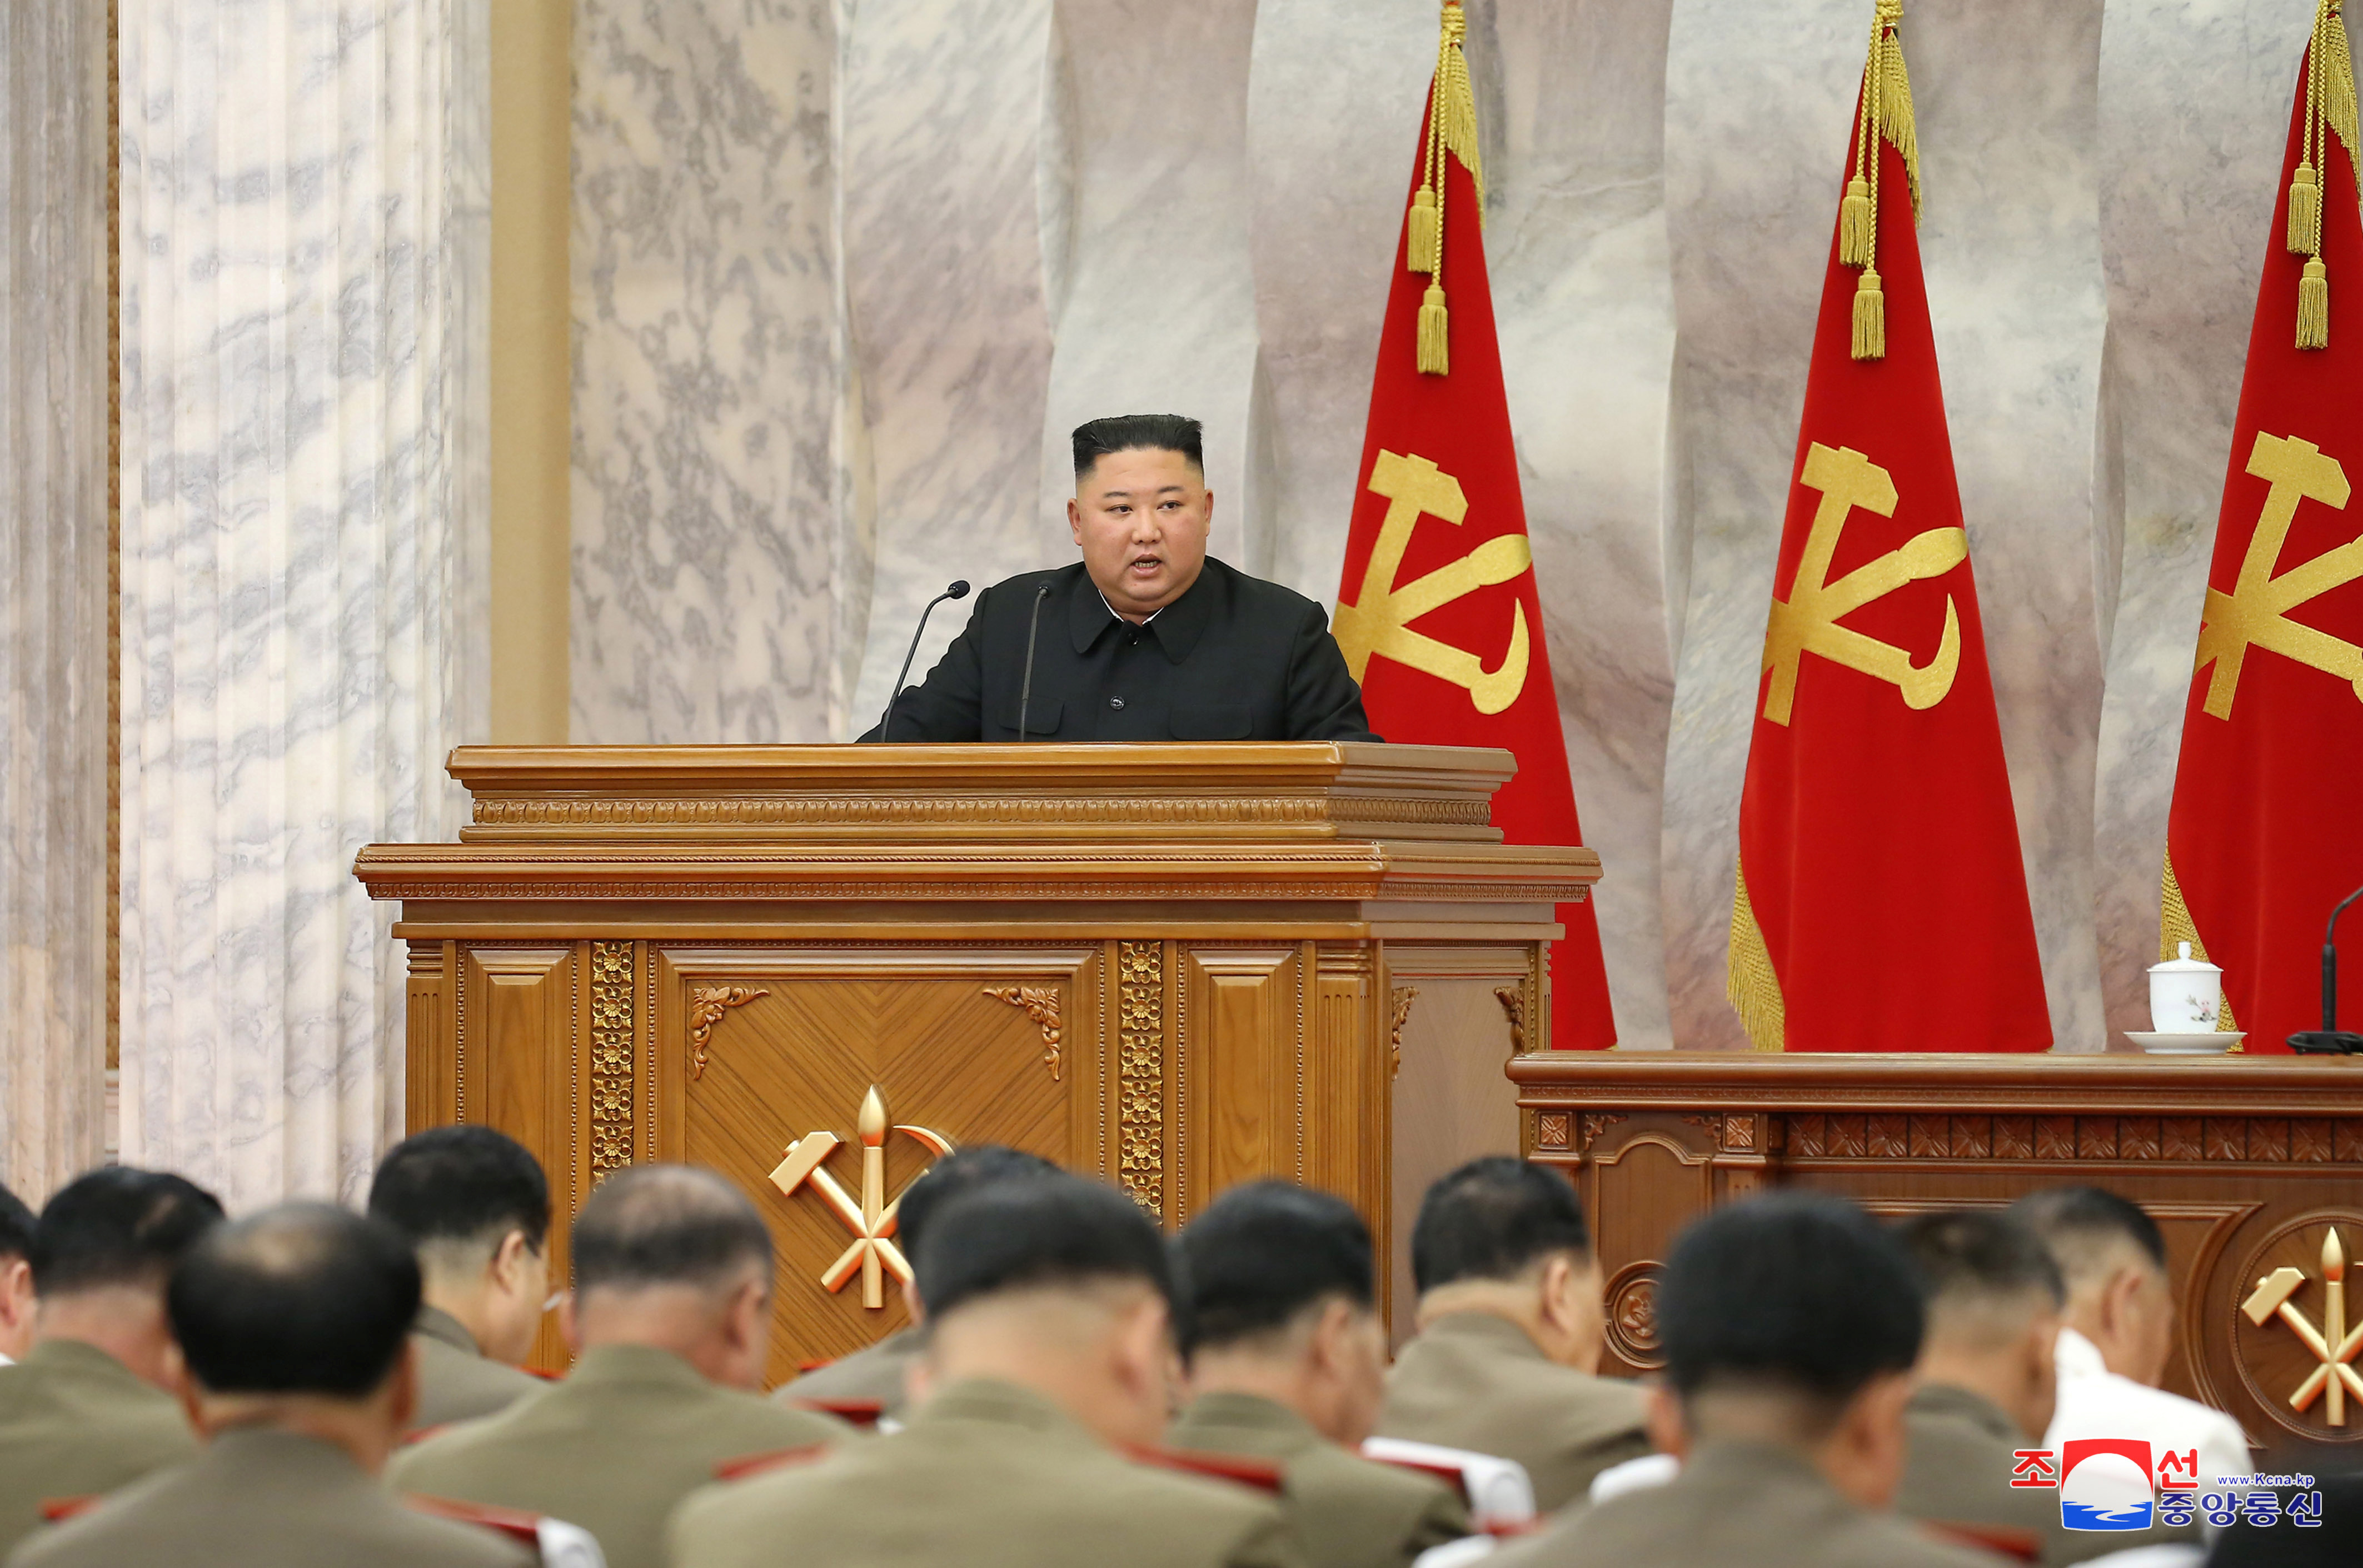 Kim Jong-un encabeza una reunión de la Séptima Comisión Militar Central del Partido de los Trabajadores de Corea (WPK), en una imagen publicada por la agencia de noticias estatal el pasado 19 de julio (Reuters)